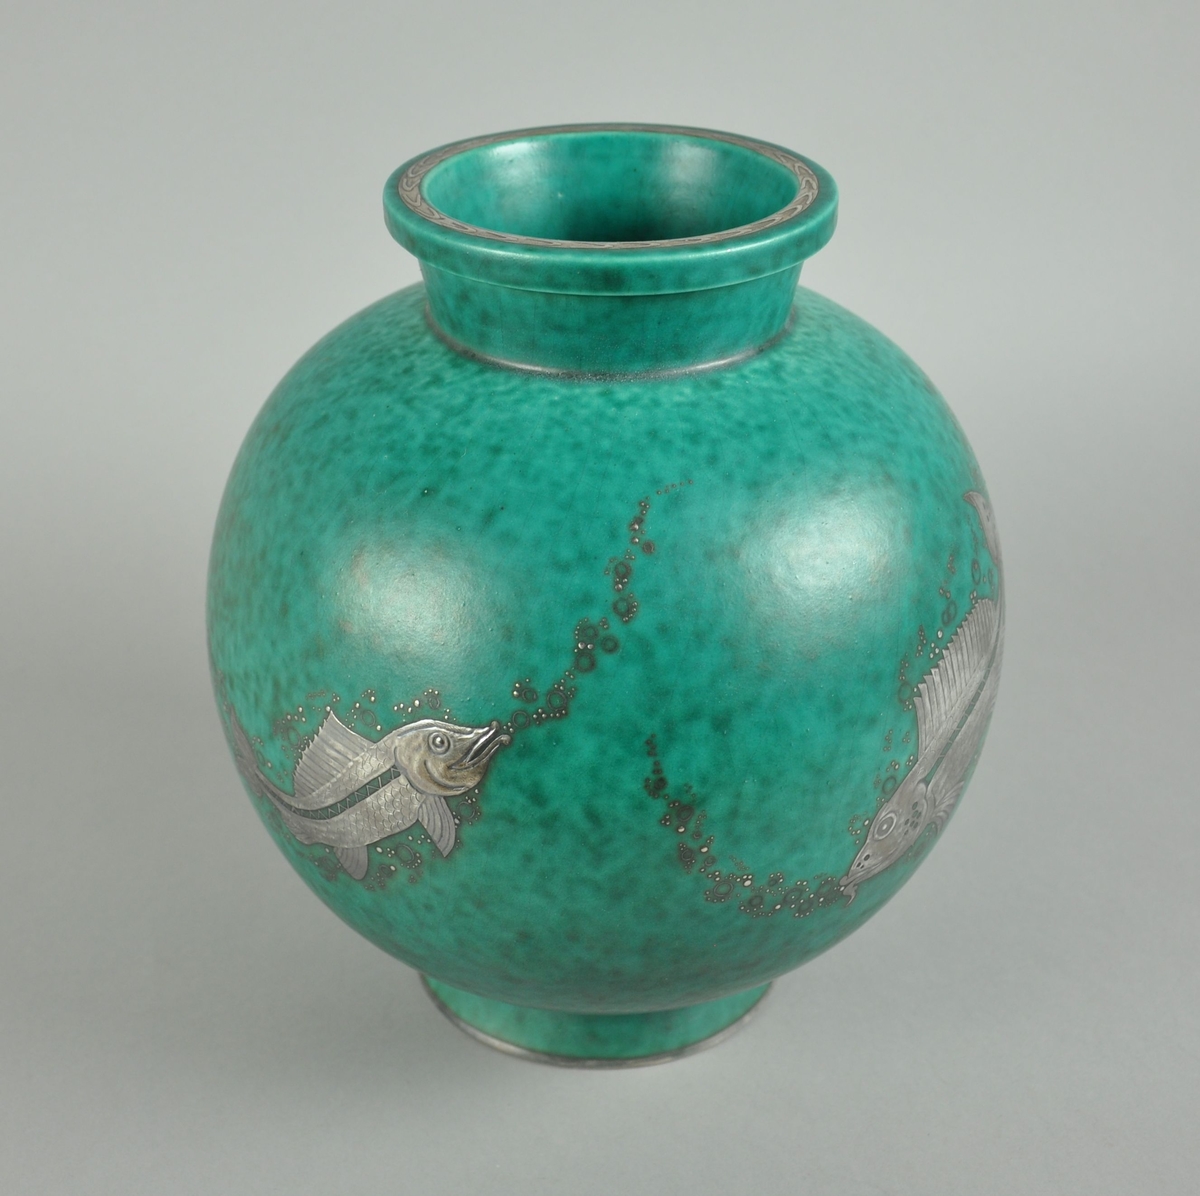 Grønn vase av keramikk. Vasen har en rund form med sokkel og rand. På oversiden av randen går det en dekorborde. På korpus er det gravert dekor av metall, forestiller fisk som blåser luftbobler.